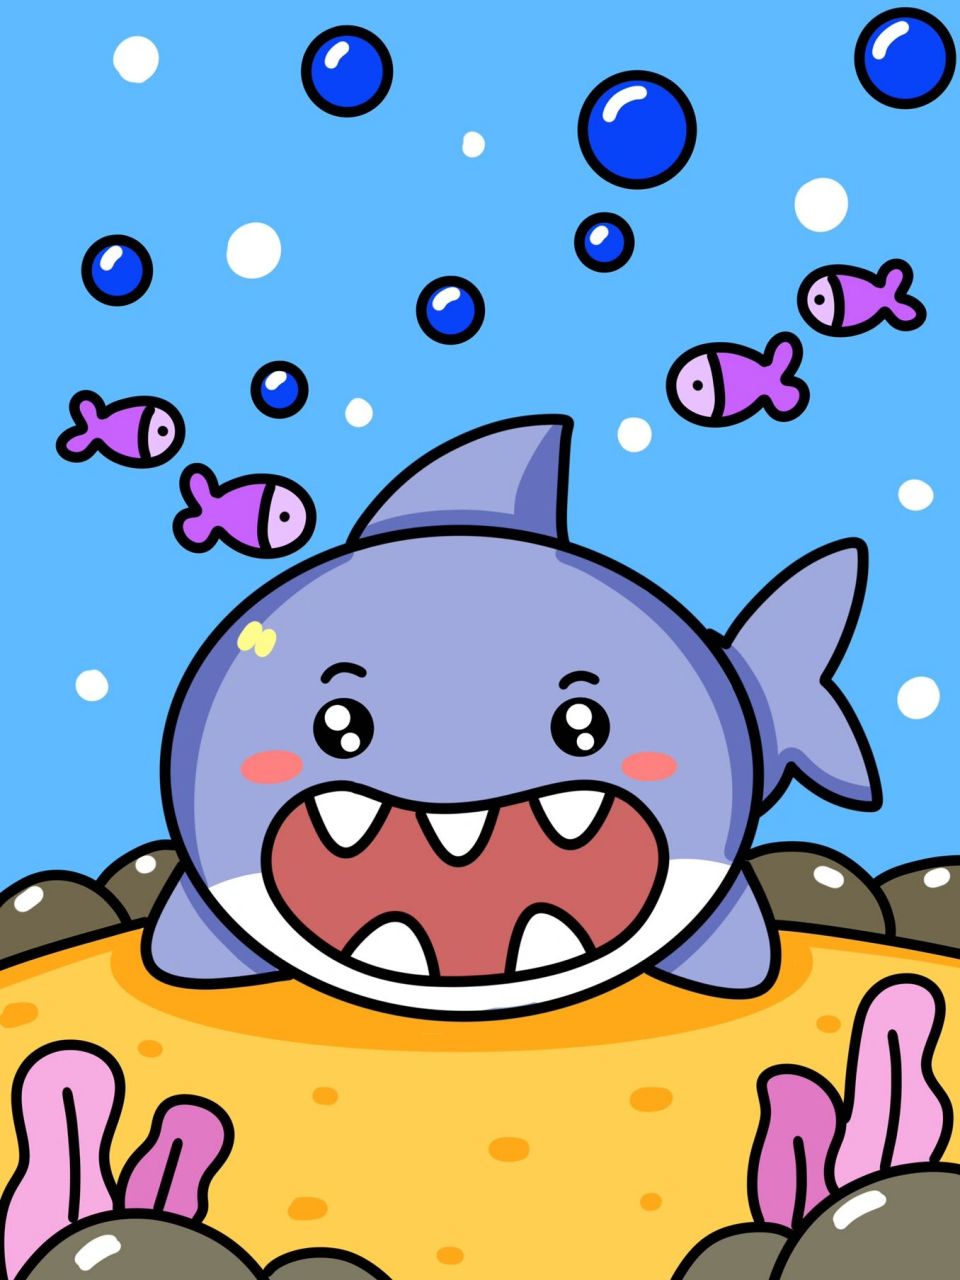 鲨鱼简笔画带颜色彩色图片